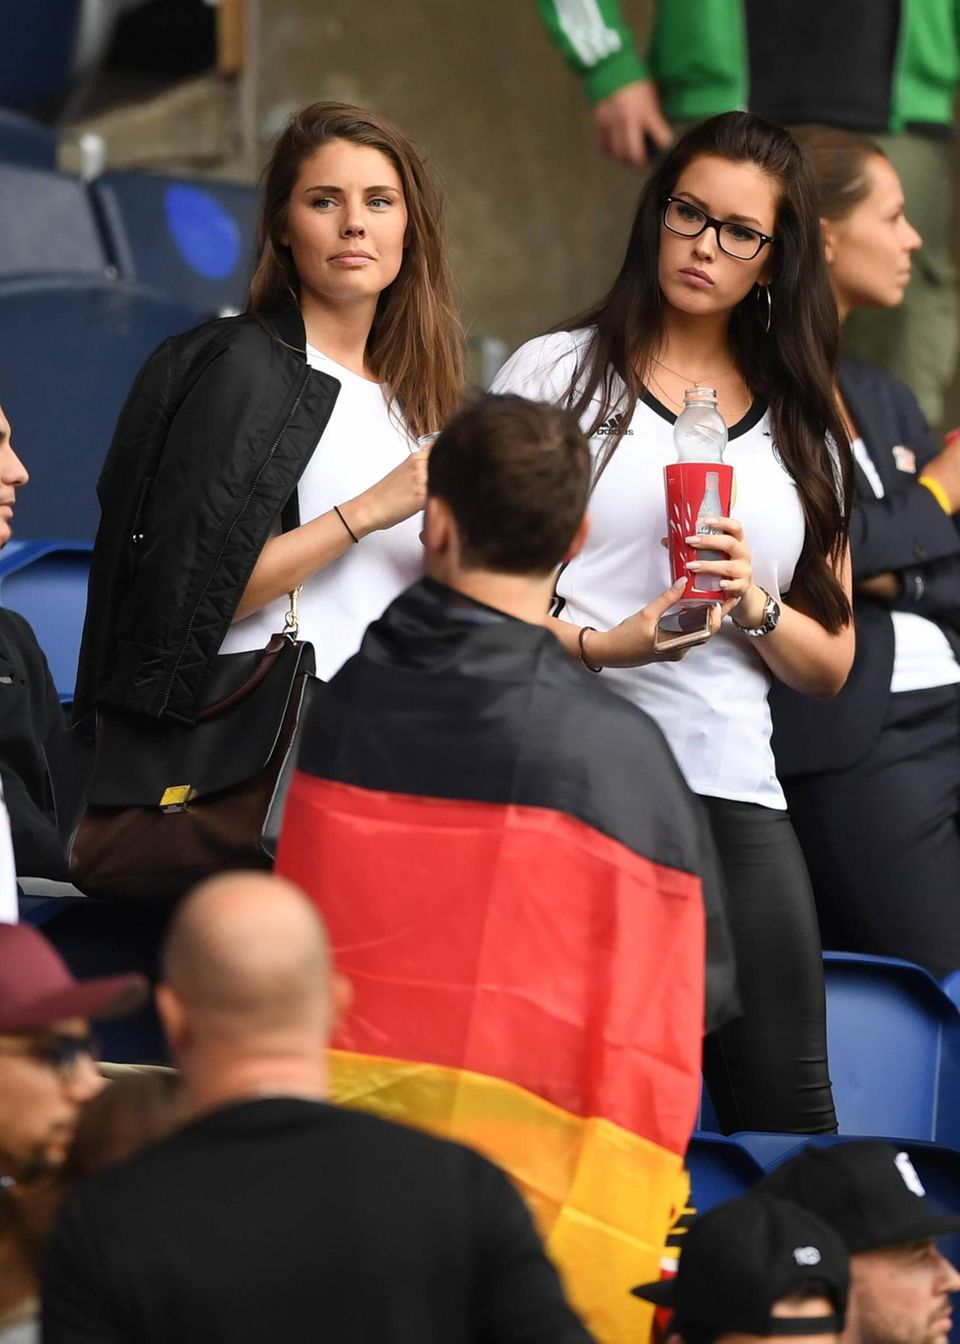 Jonas Hector und Julian Draxler können sich über Unterstützung vom Spielfeldrand freuen. Ihre Freundinnen Annika und Lena Stiffel feuern das deutsche Team beim Spiel gegen Nordirland an.